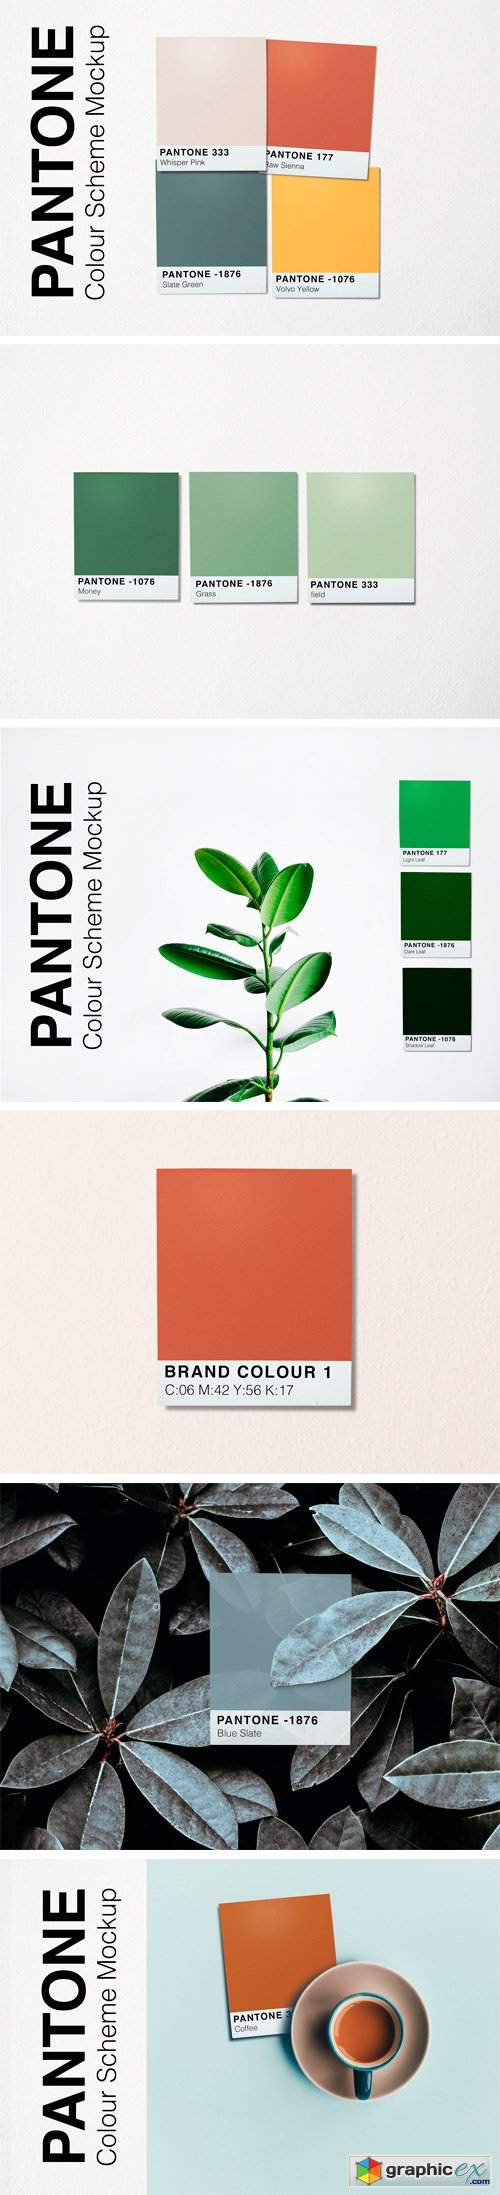 Pantone Colour Scheme Mockup